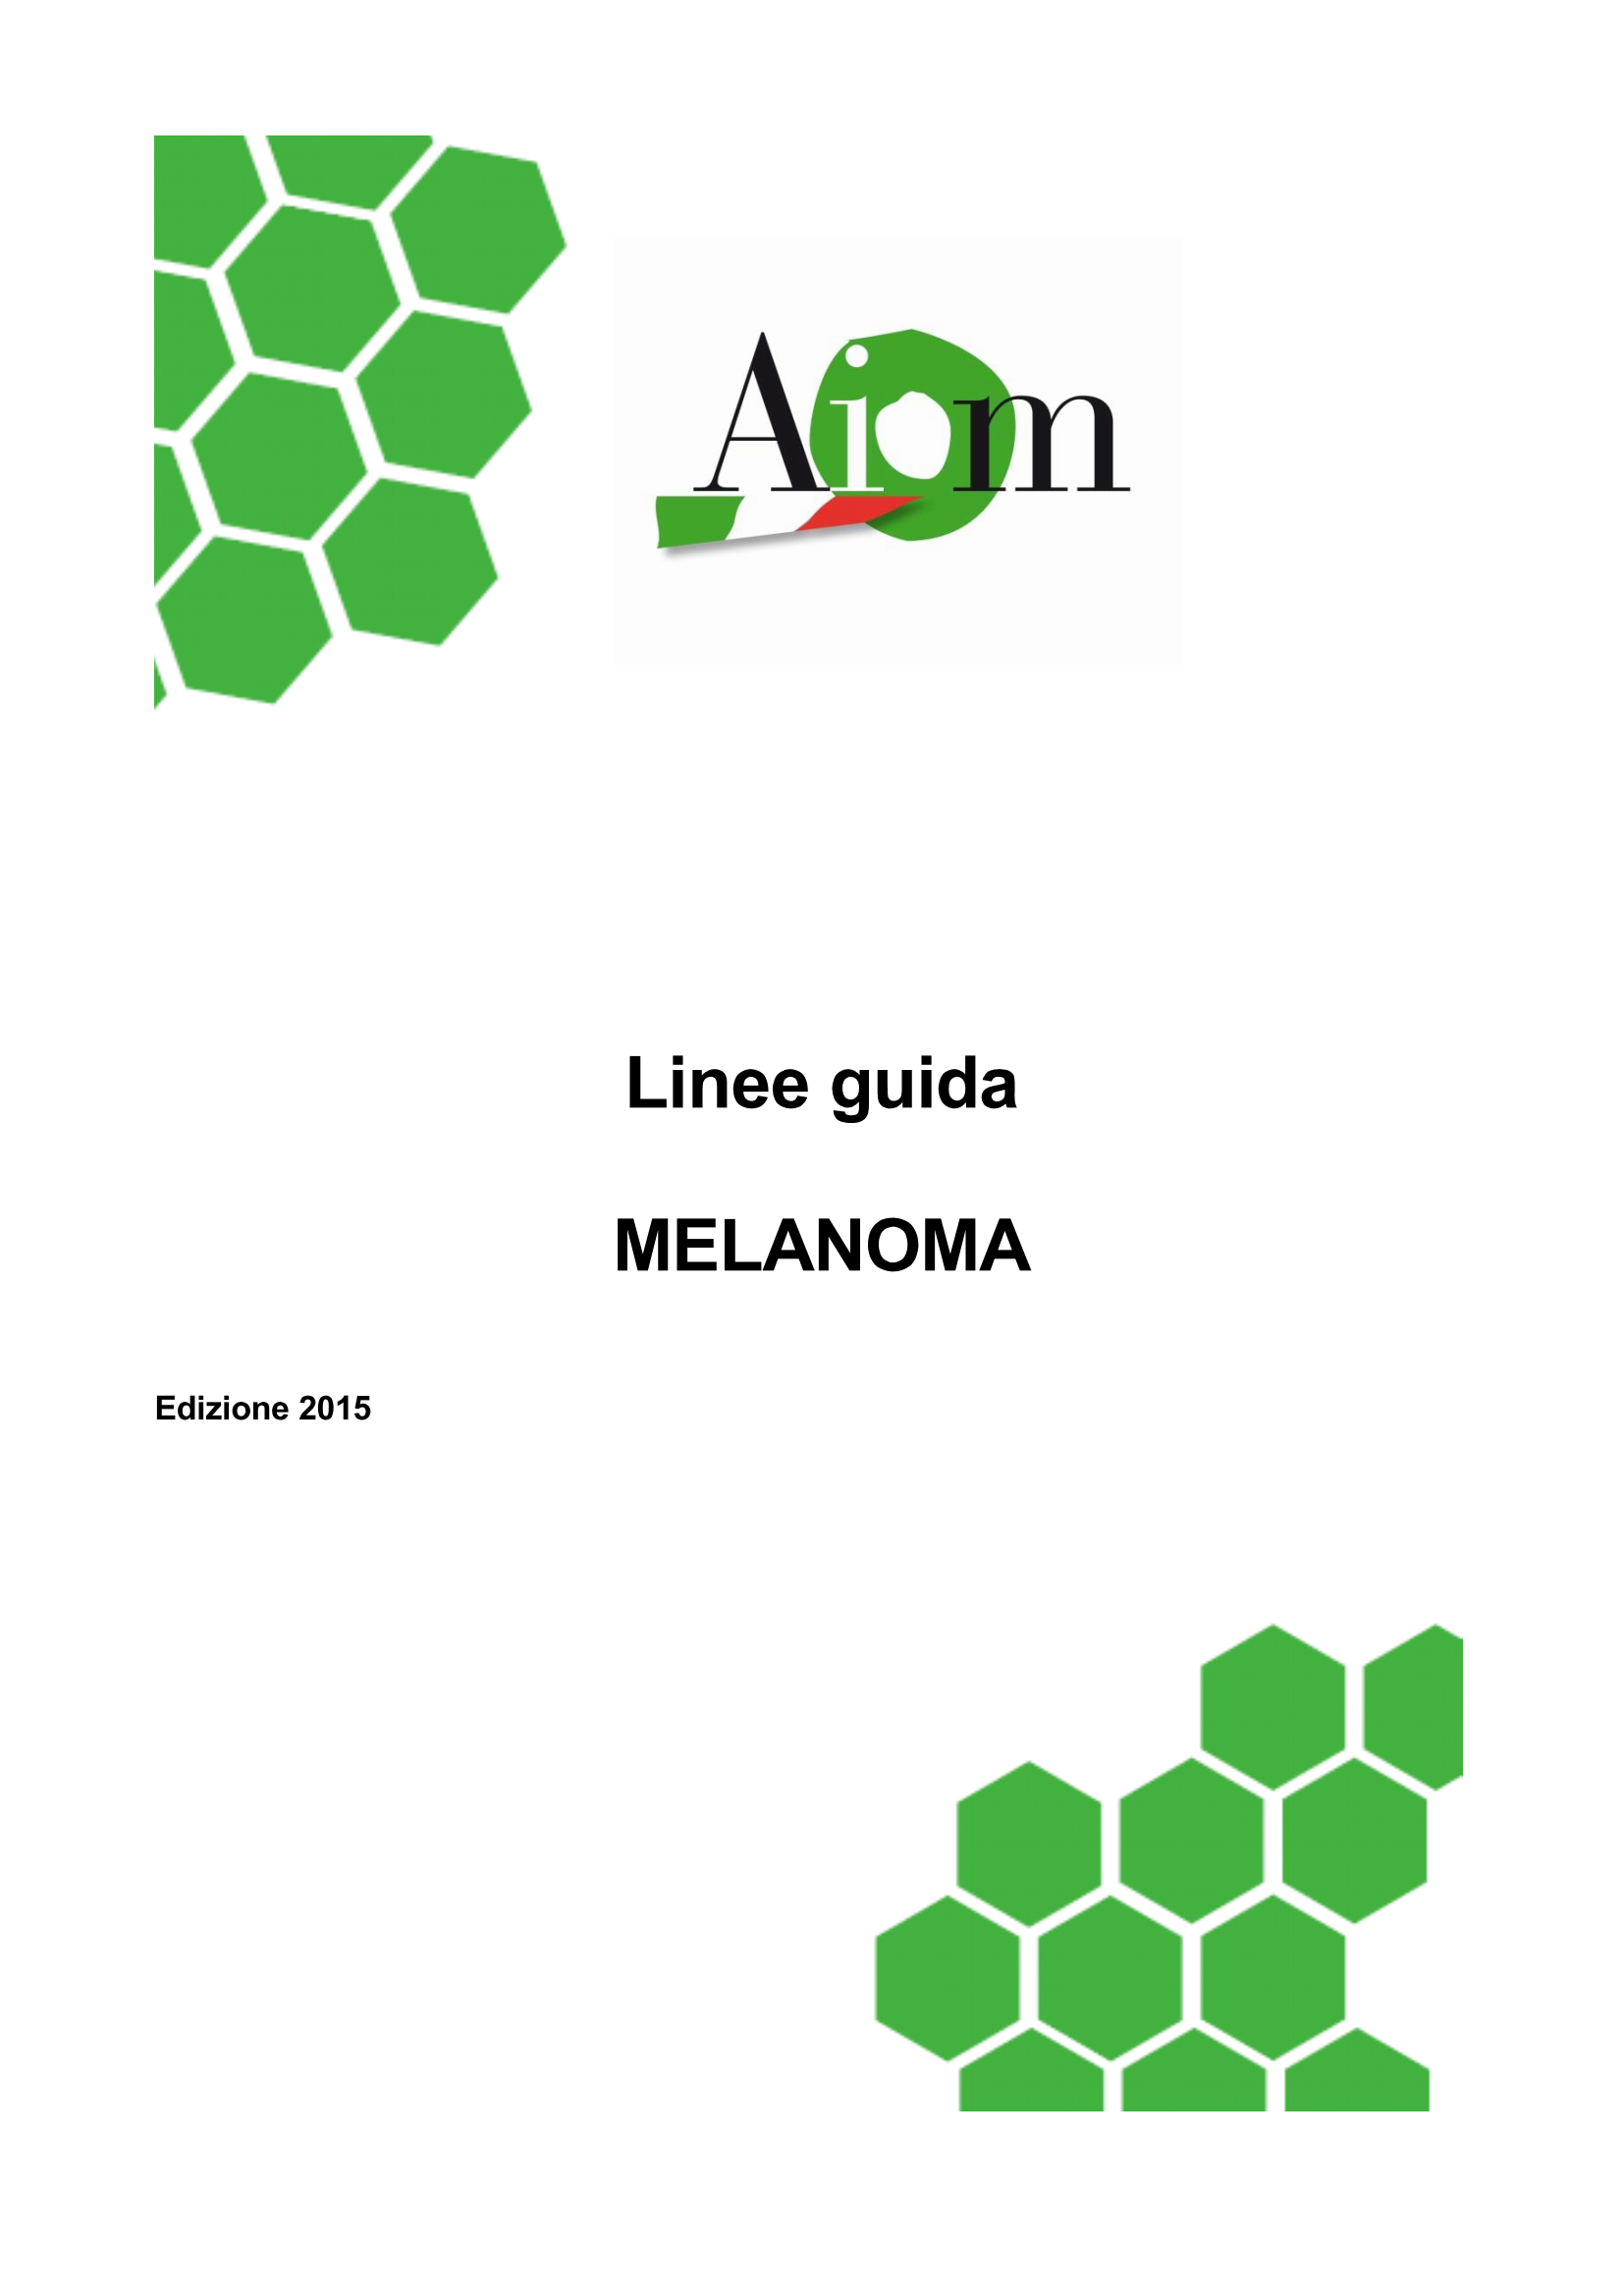 2015 LG AIOM Melanoma Page 1